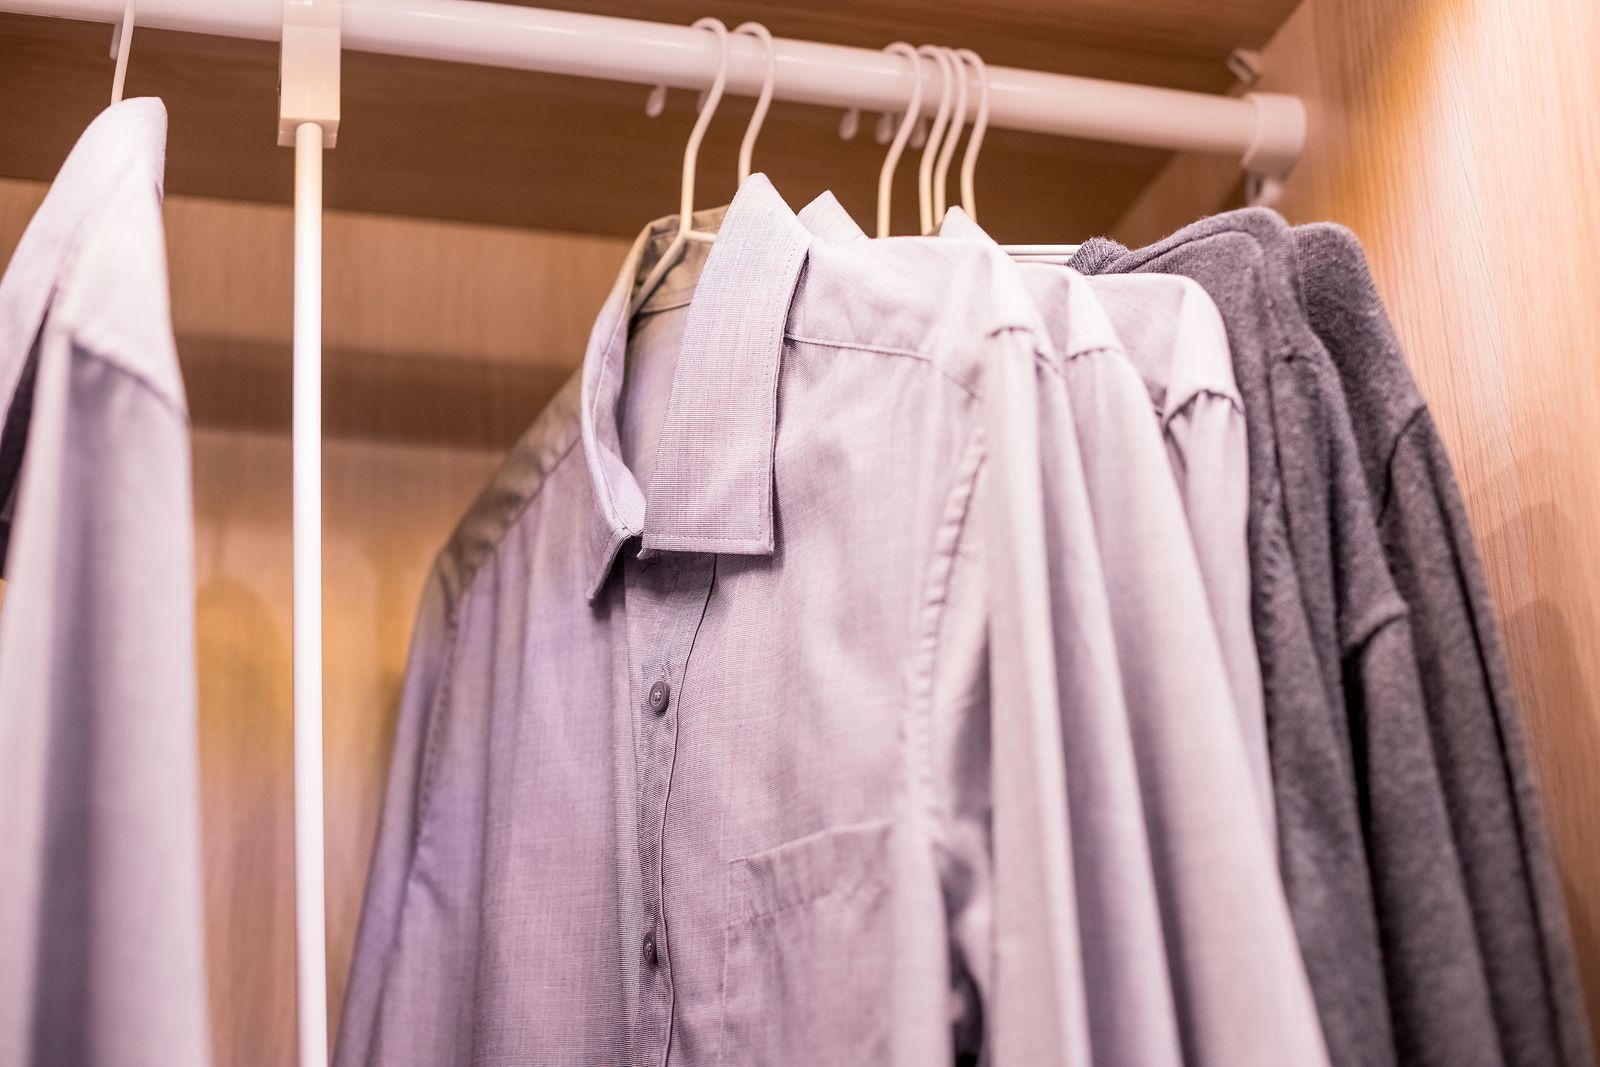 Protege a la ropa de tu armario de los malos olores con estos consejos (big stock)